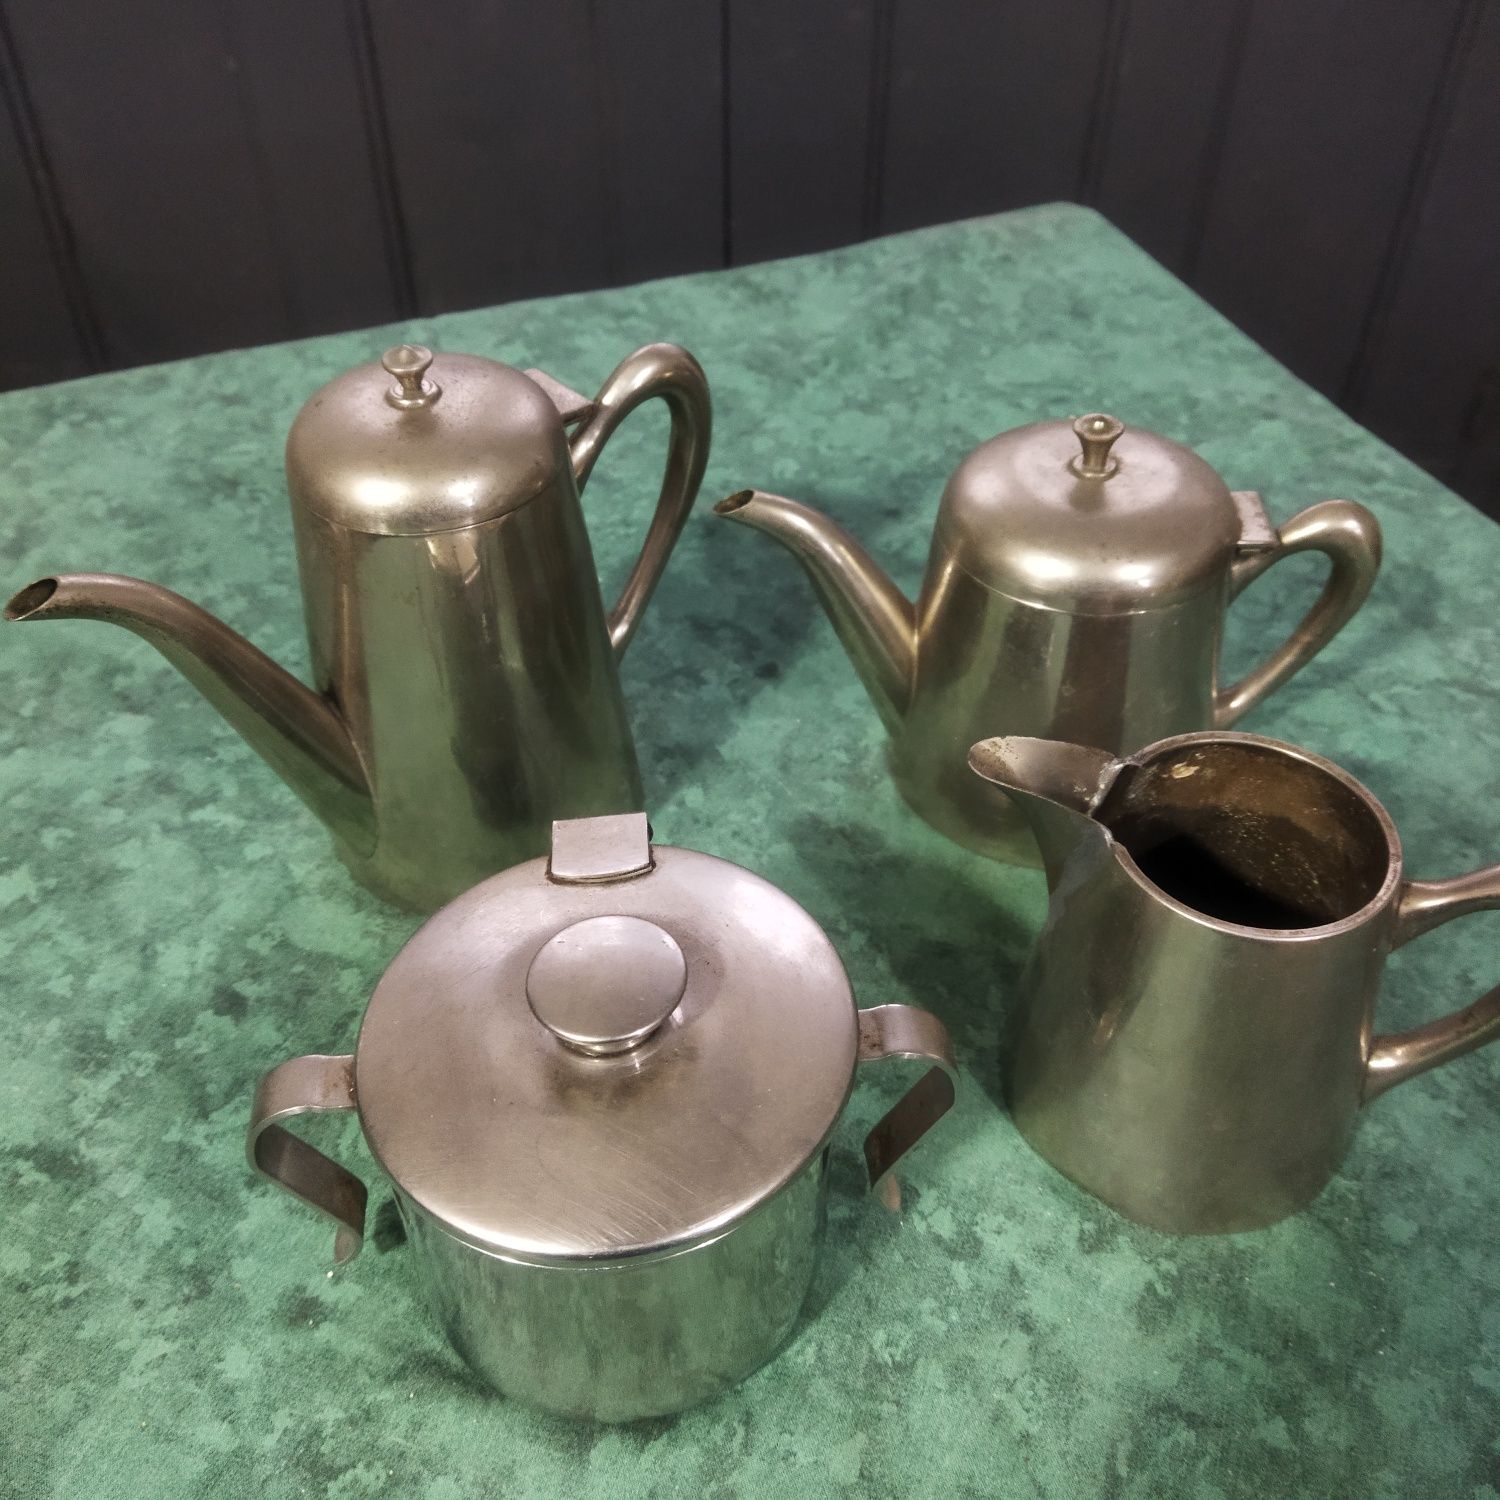 Conjunto peças antigas chá e café em alumínio